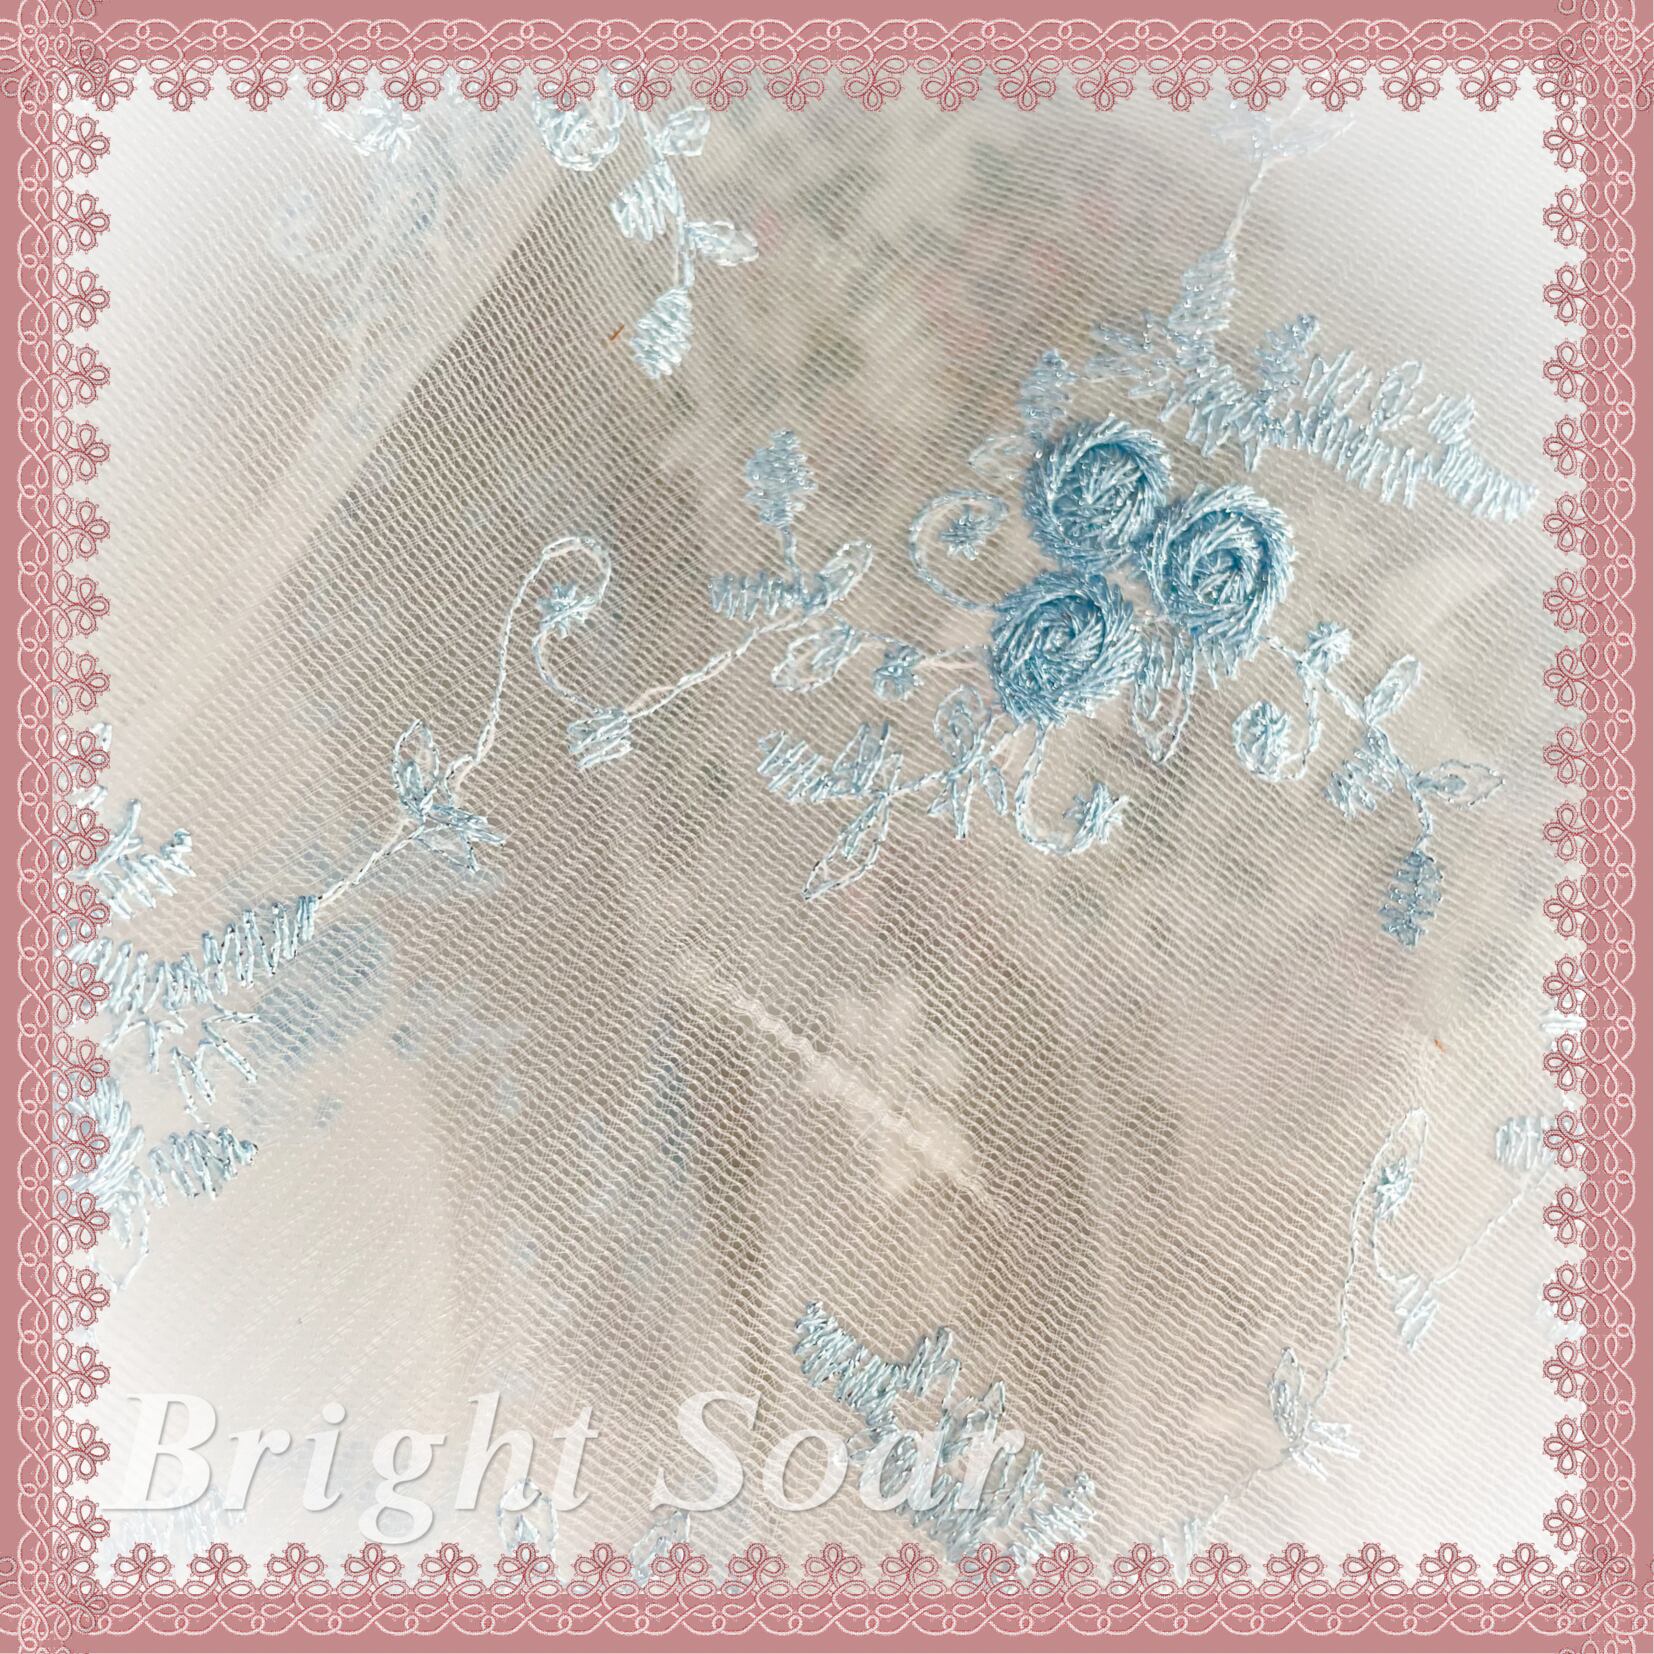 No.701 刺繍 チュールレース 銀糸入り刺繍